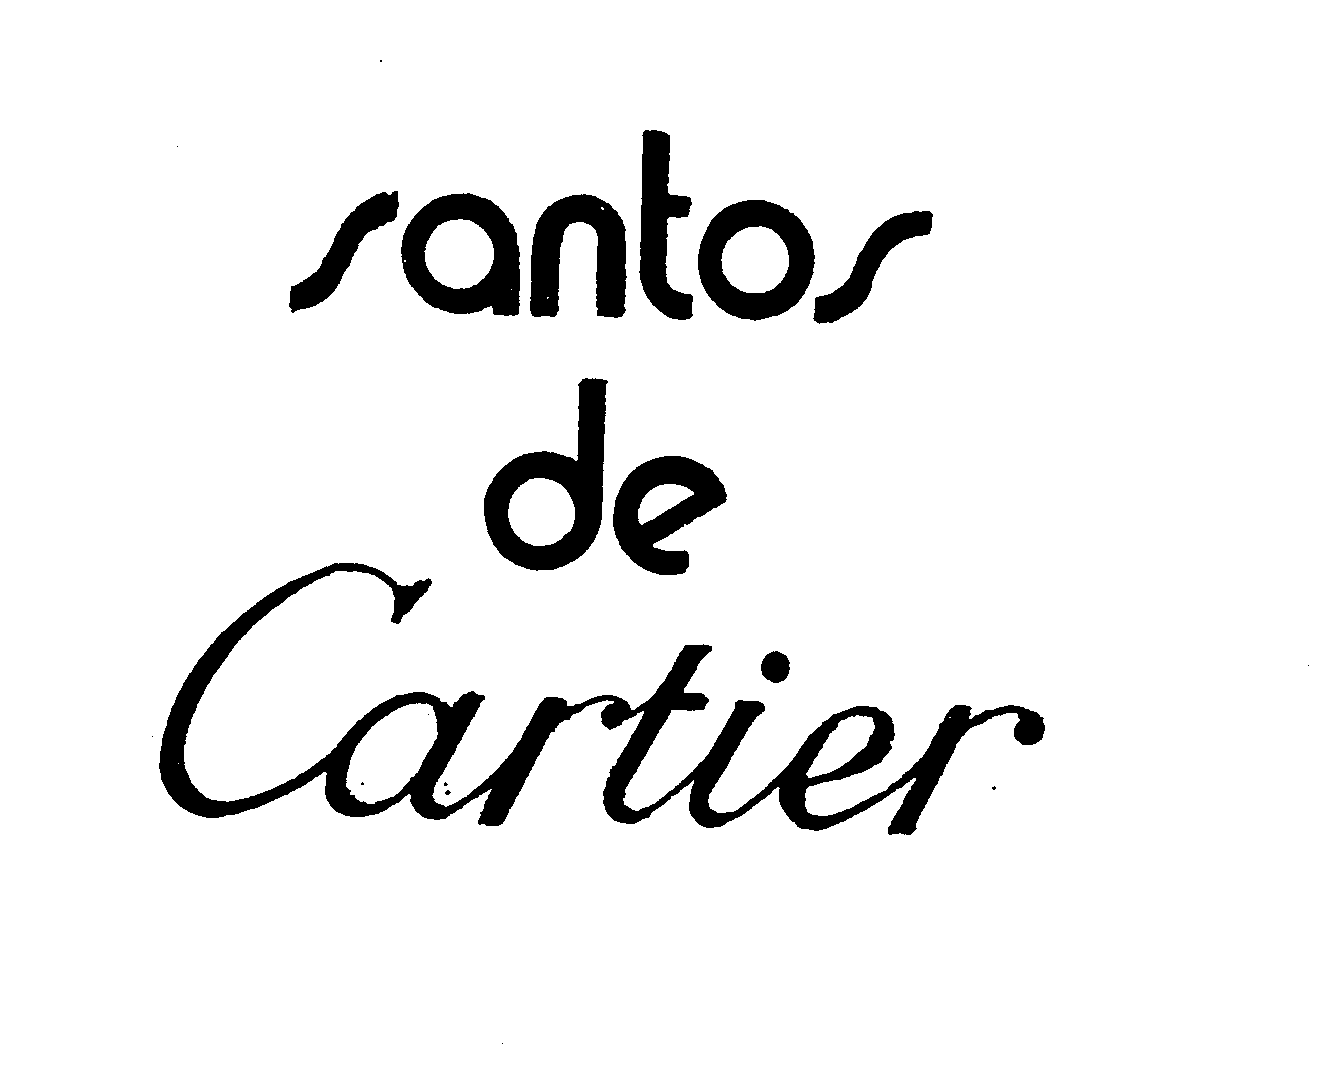 SANTOS DE CARTIER